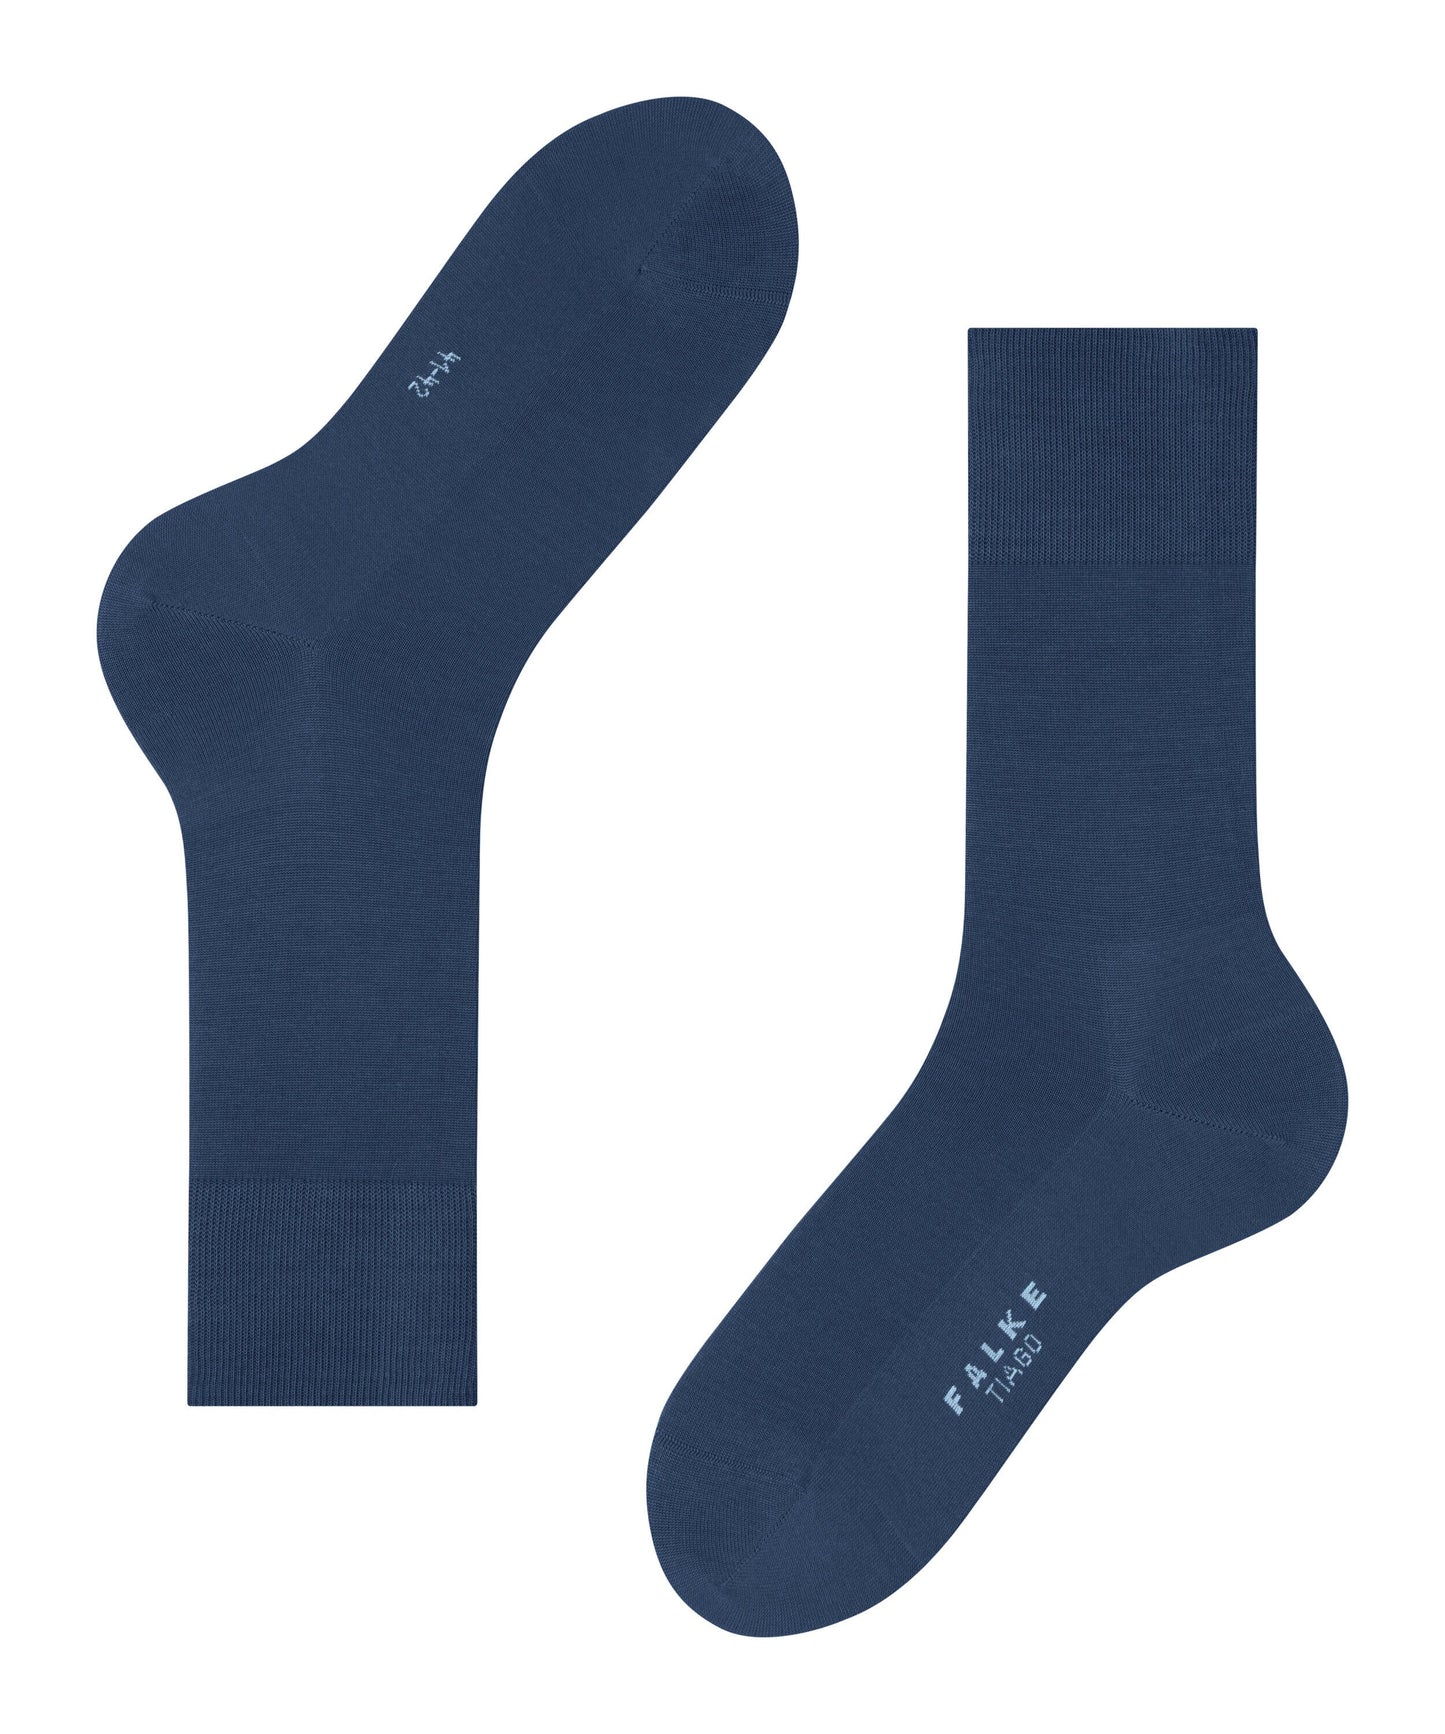 FALKE Tiago Herren Socken (Royal Blue)